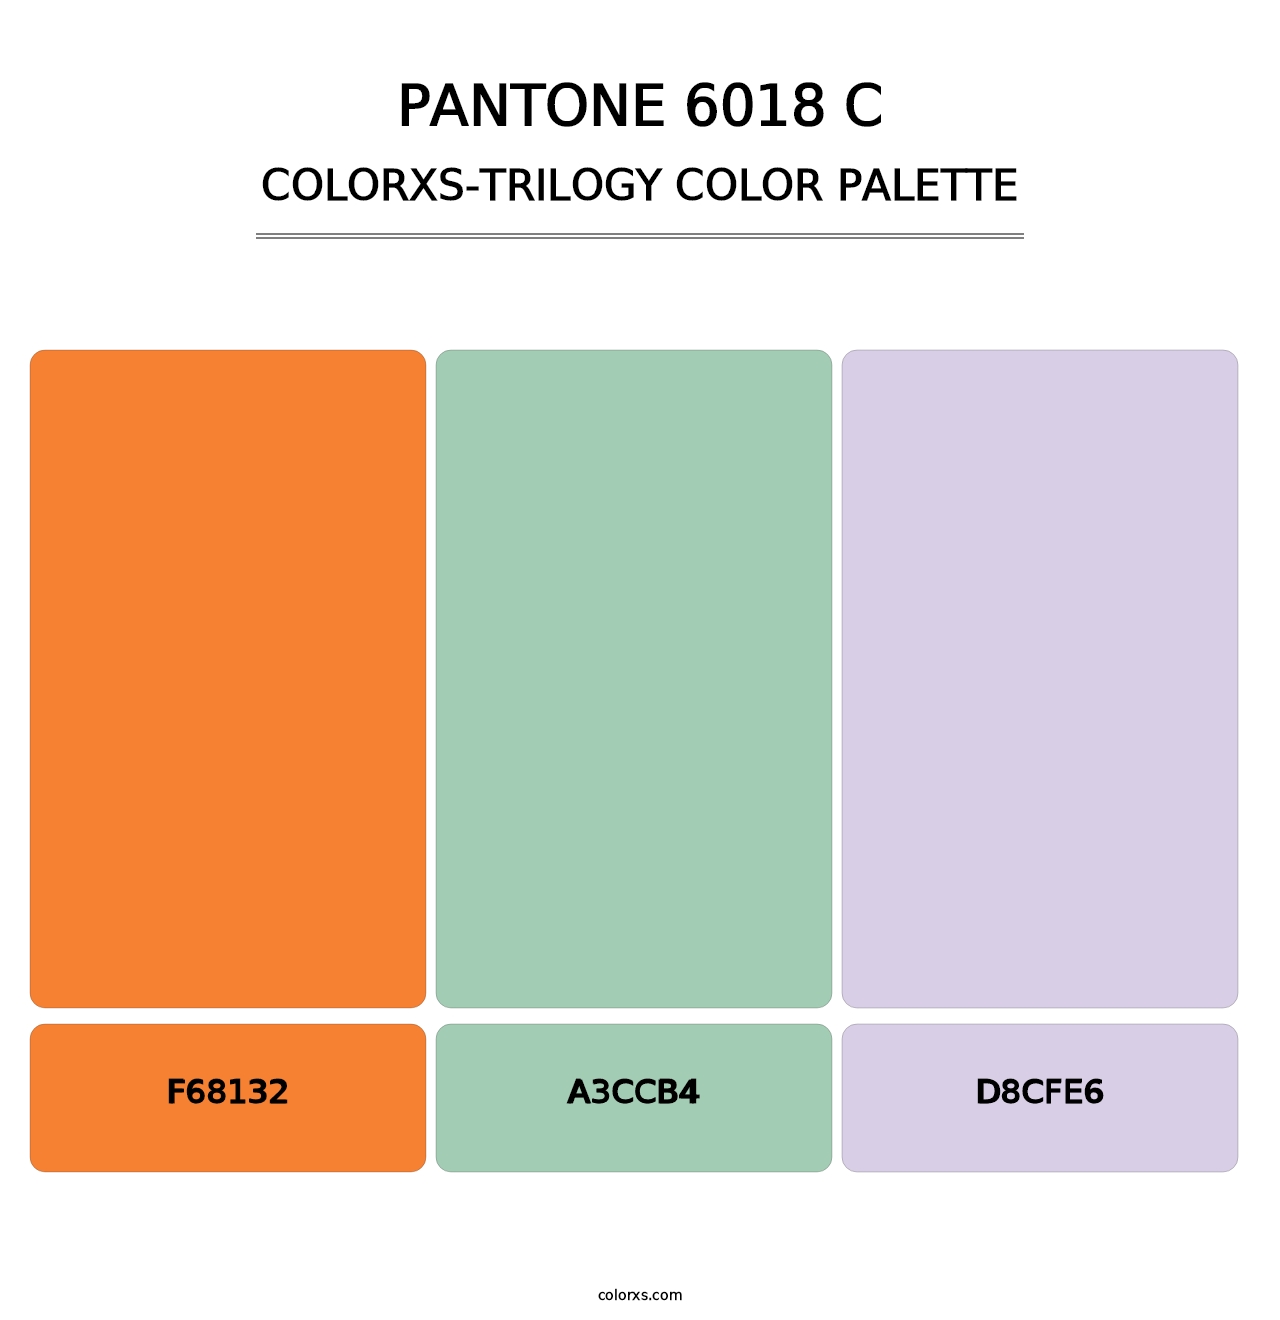 PANTONE 6018 C - Colorxs Trilogy Palette